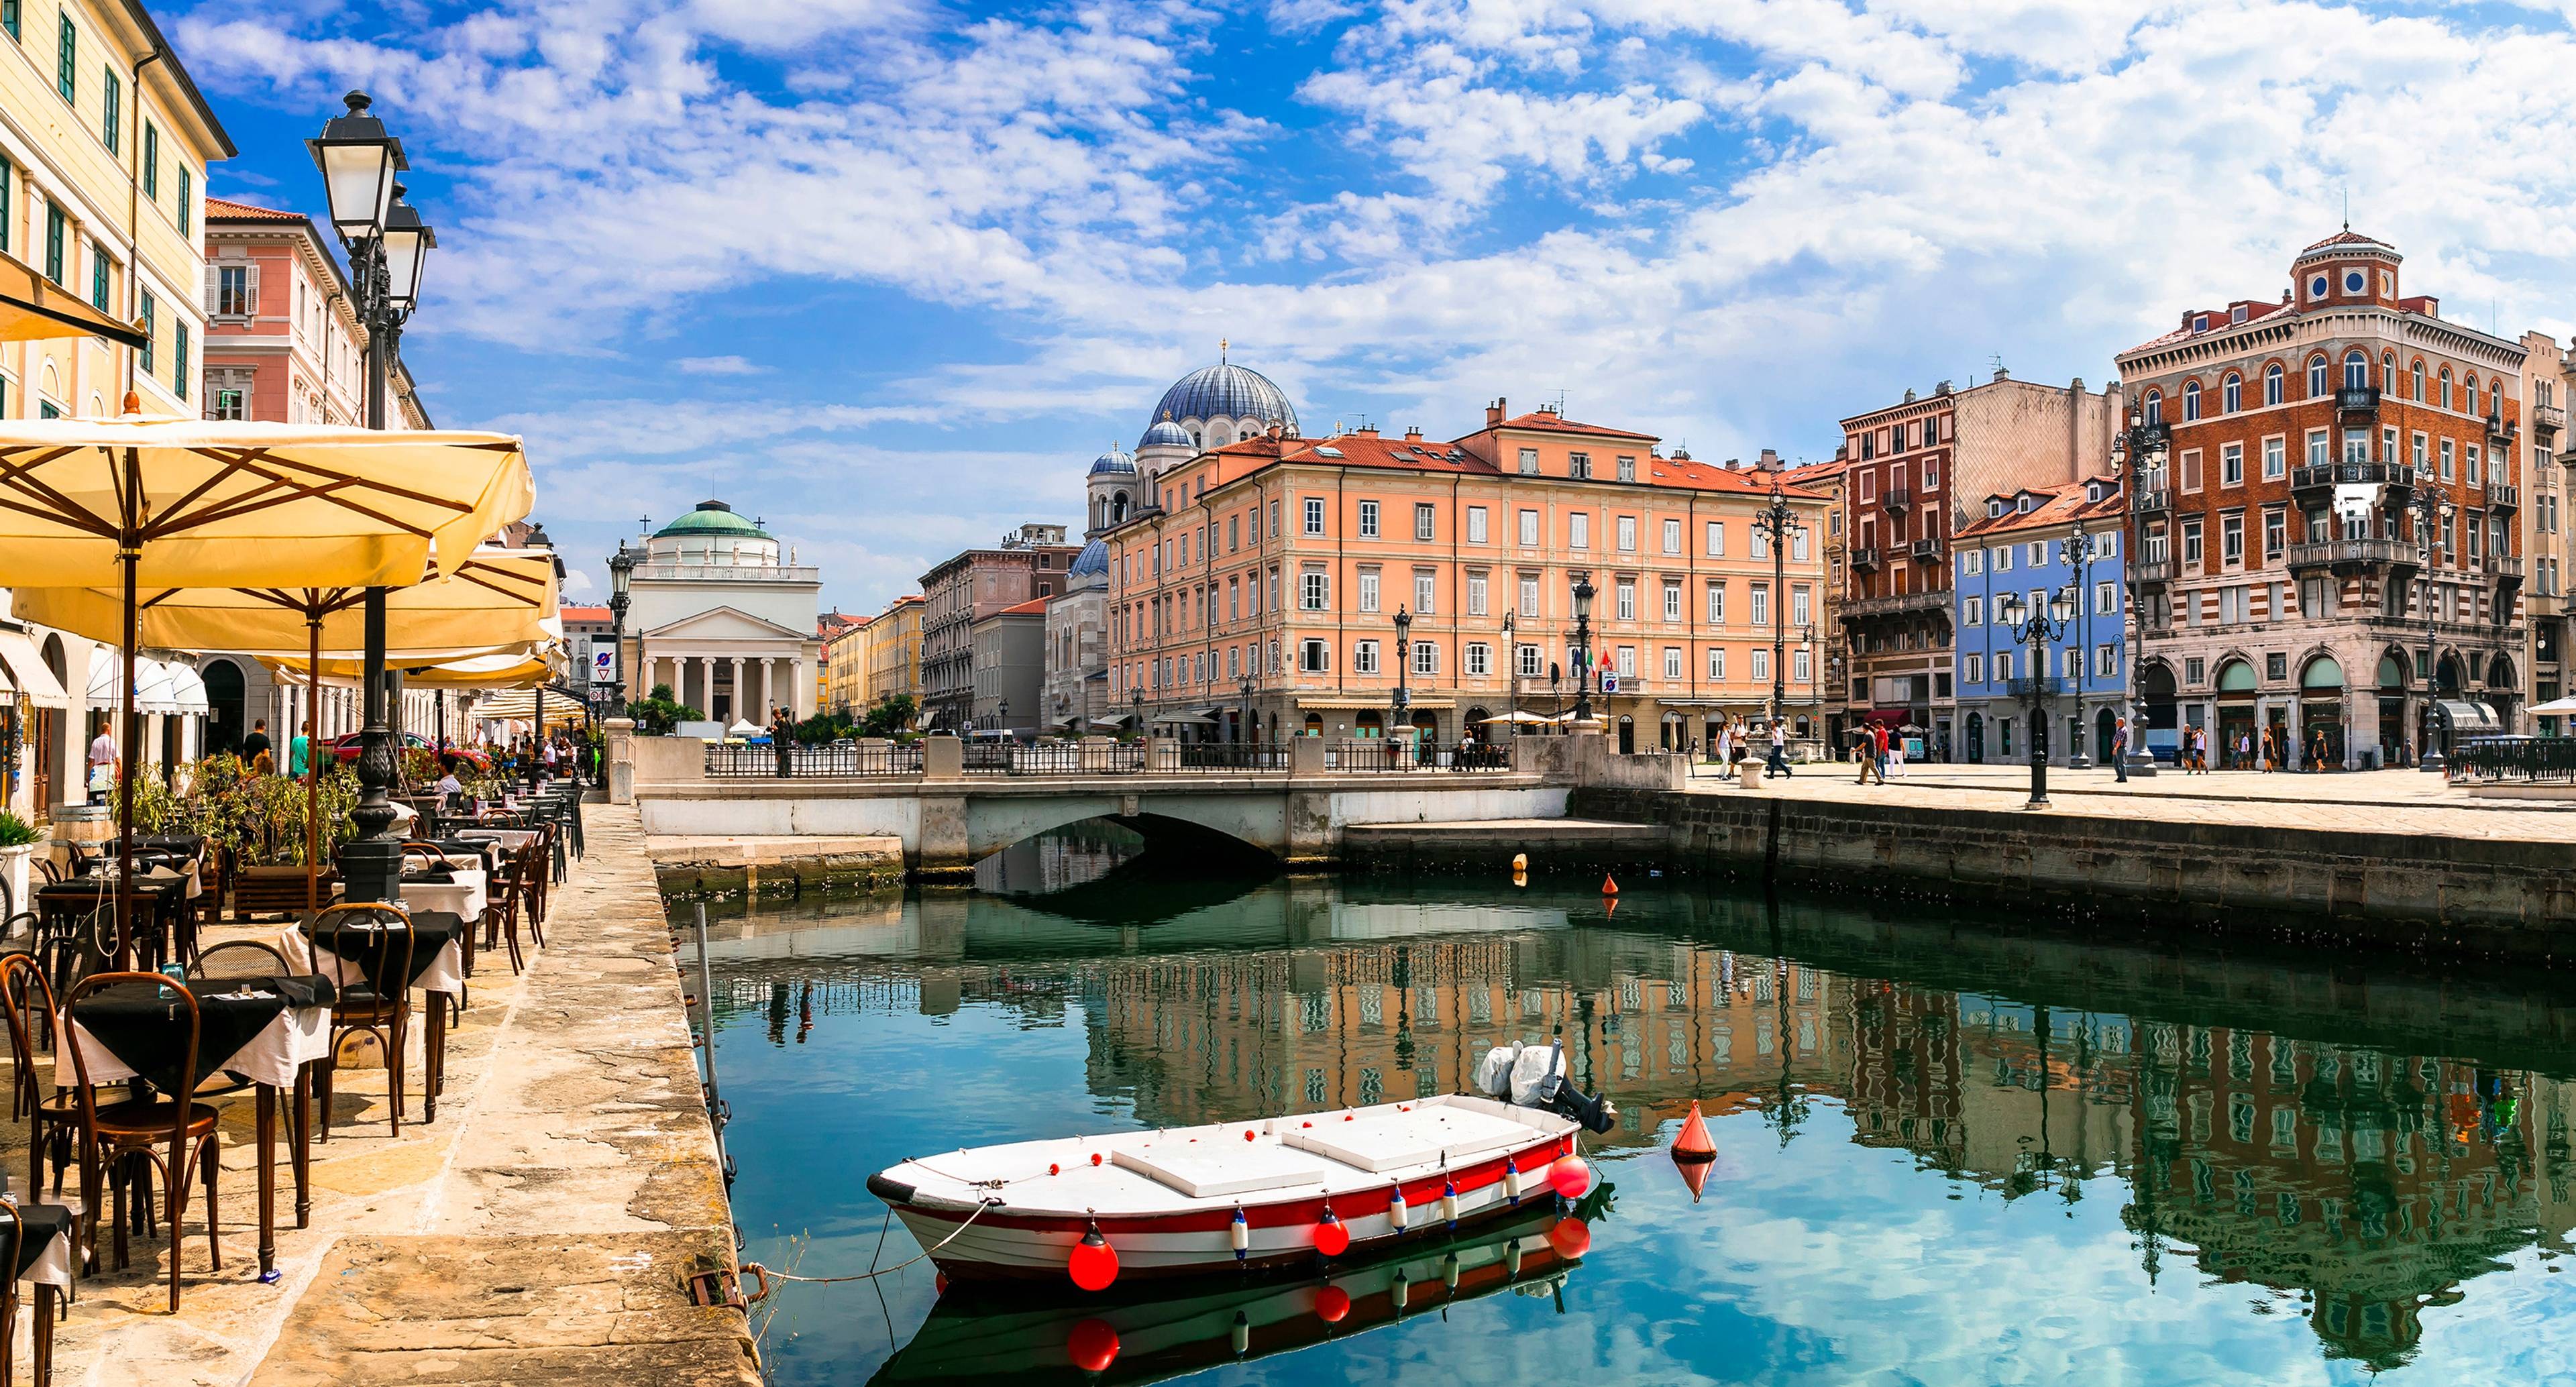 La belle ville de Trieste